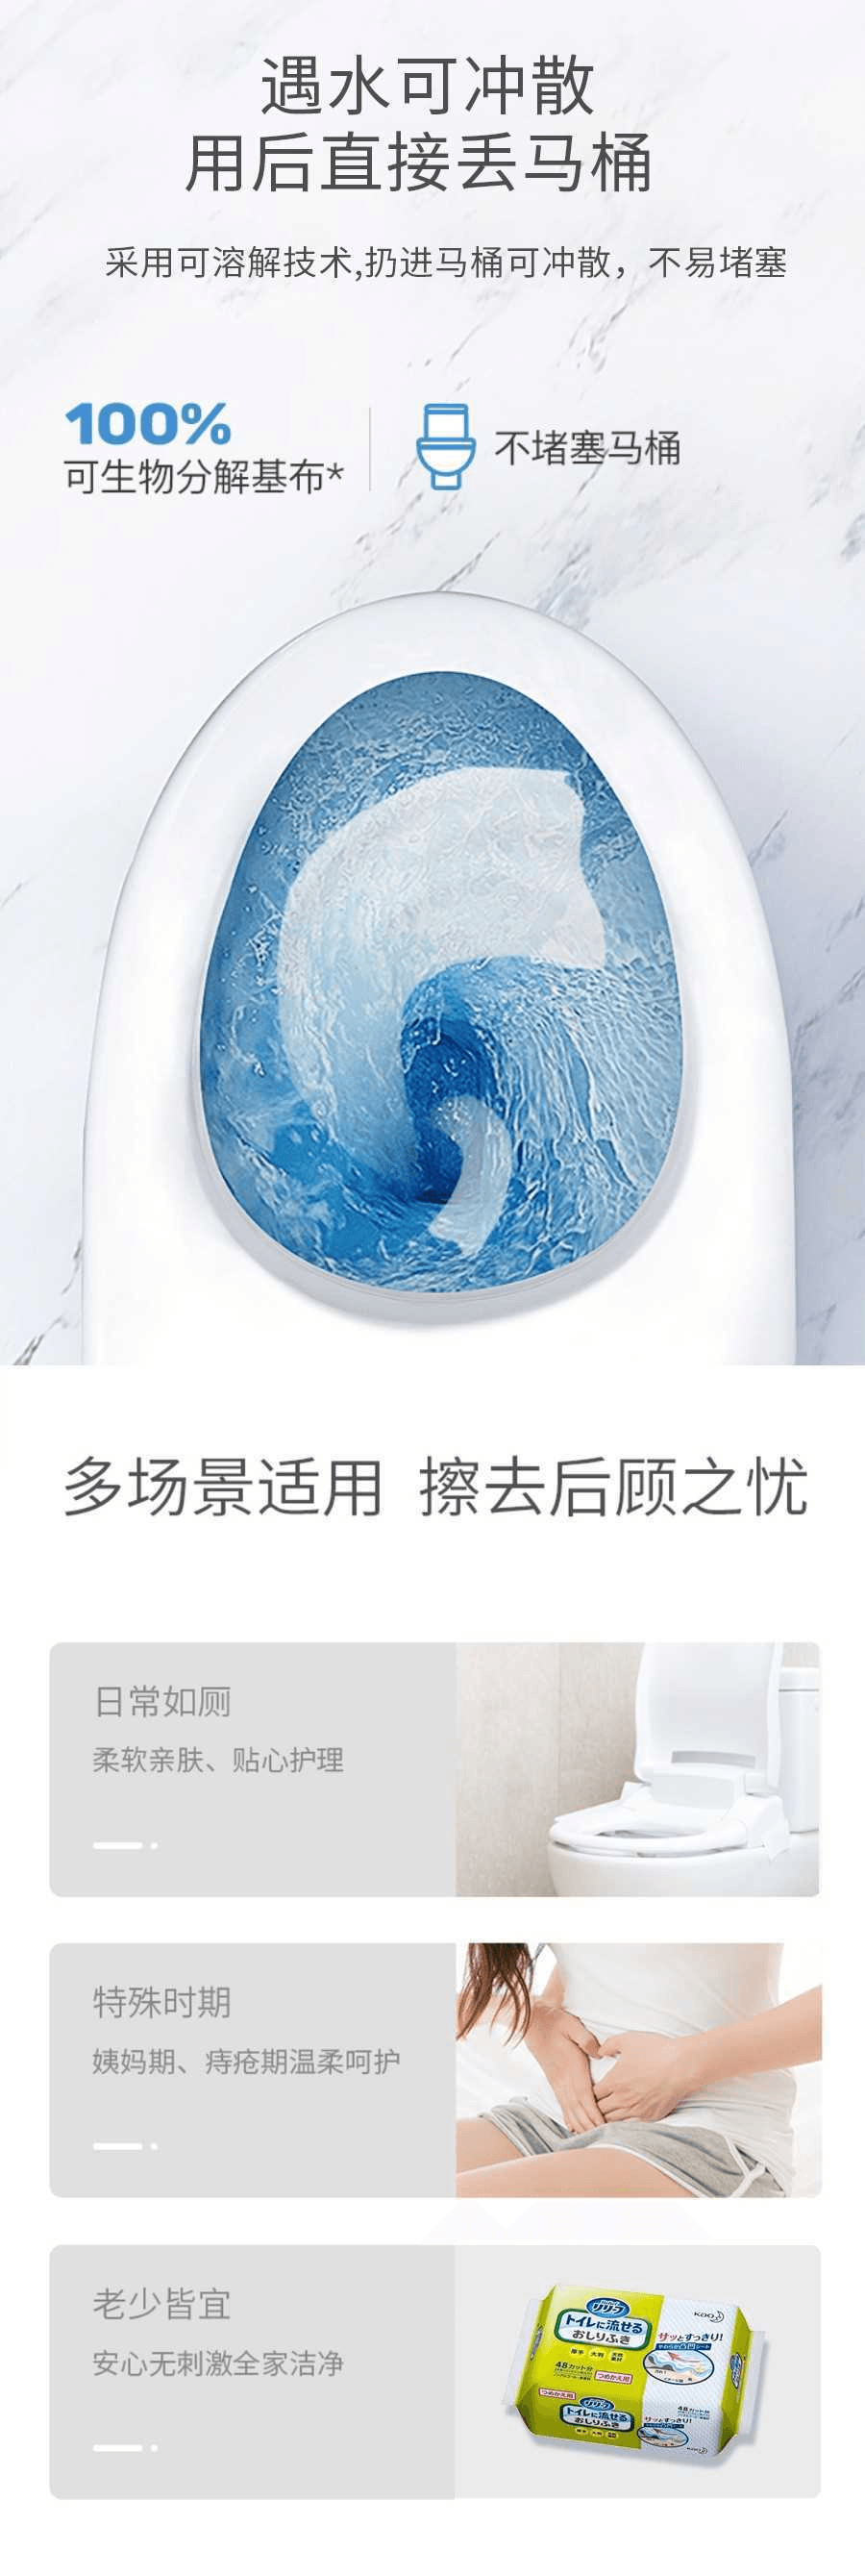 【日本直郵】KAO花王 廁所濕紙巾 可馬桶直沖 補充裝 24張